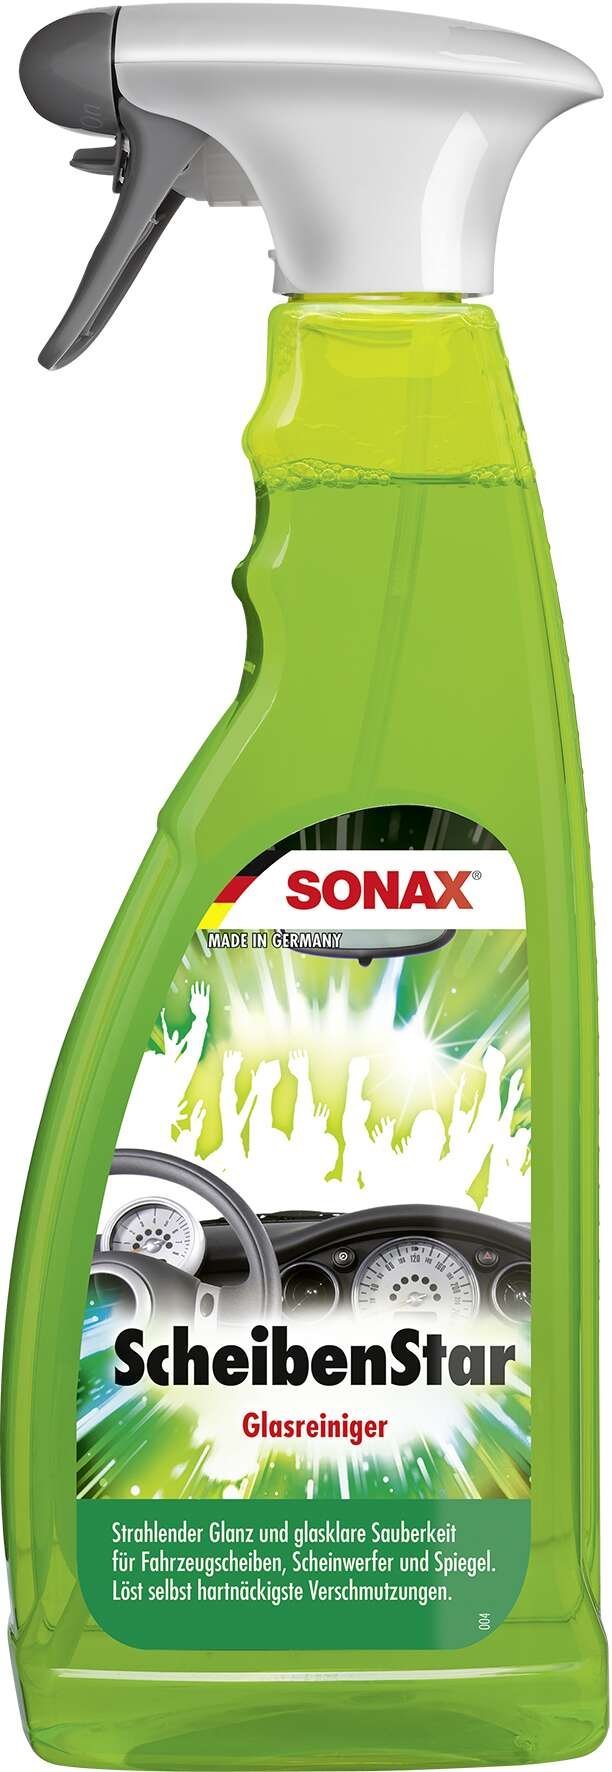 SONAX ScheibenStar PET-spuitfles 750 ml glasreiniger